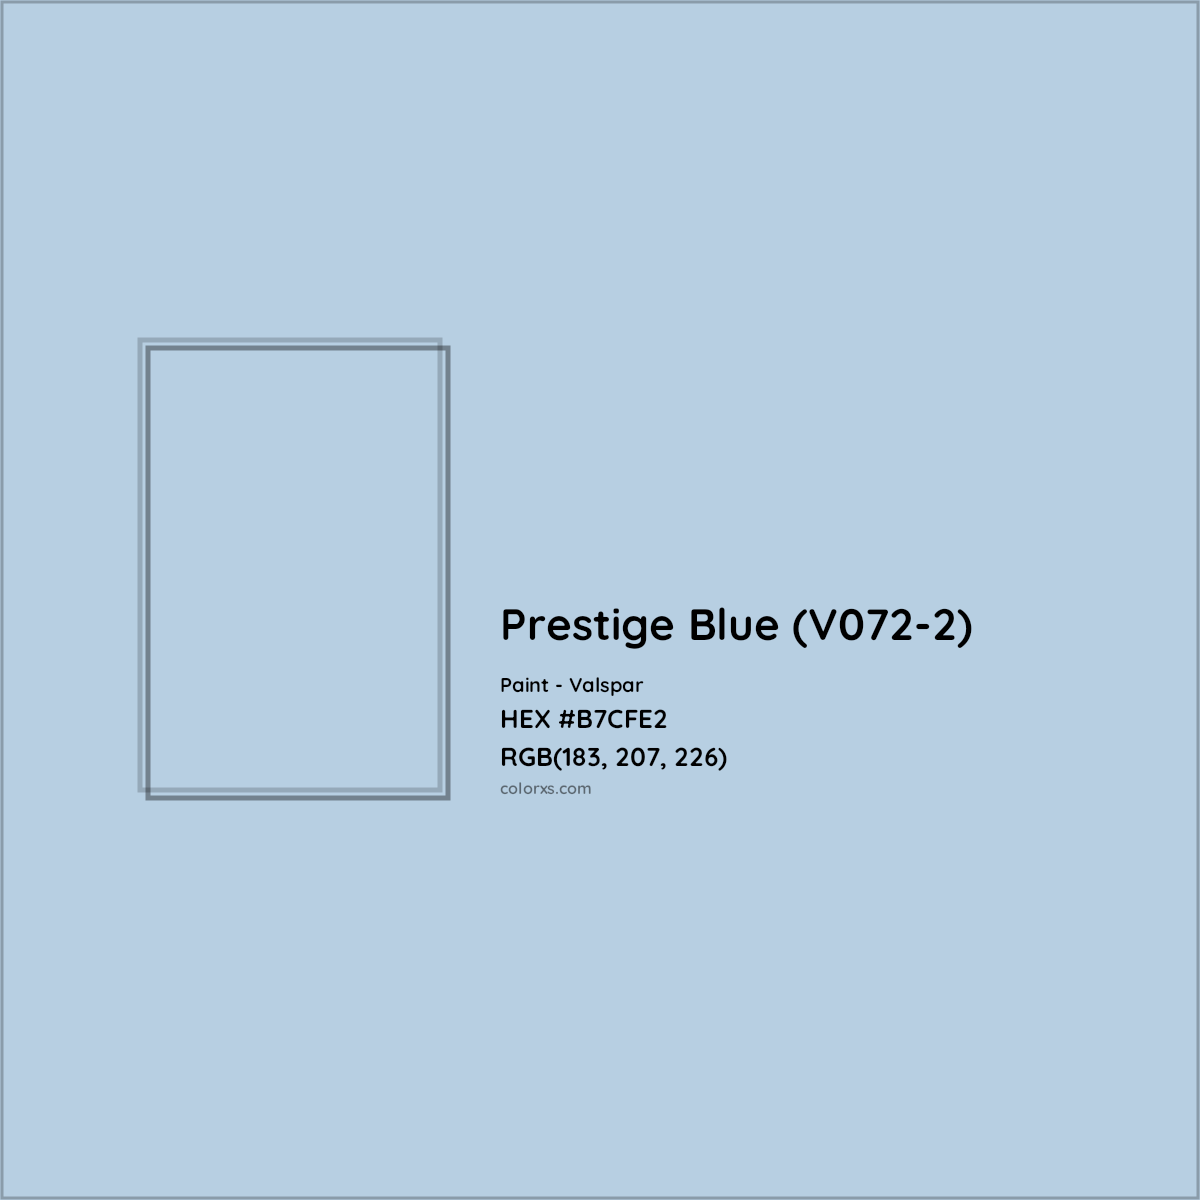 HEX #B7CFE2 Prestige Blue (V072-2) Paint Valspar - Color Code